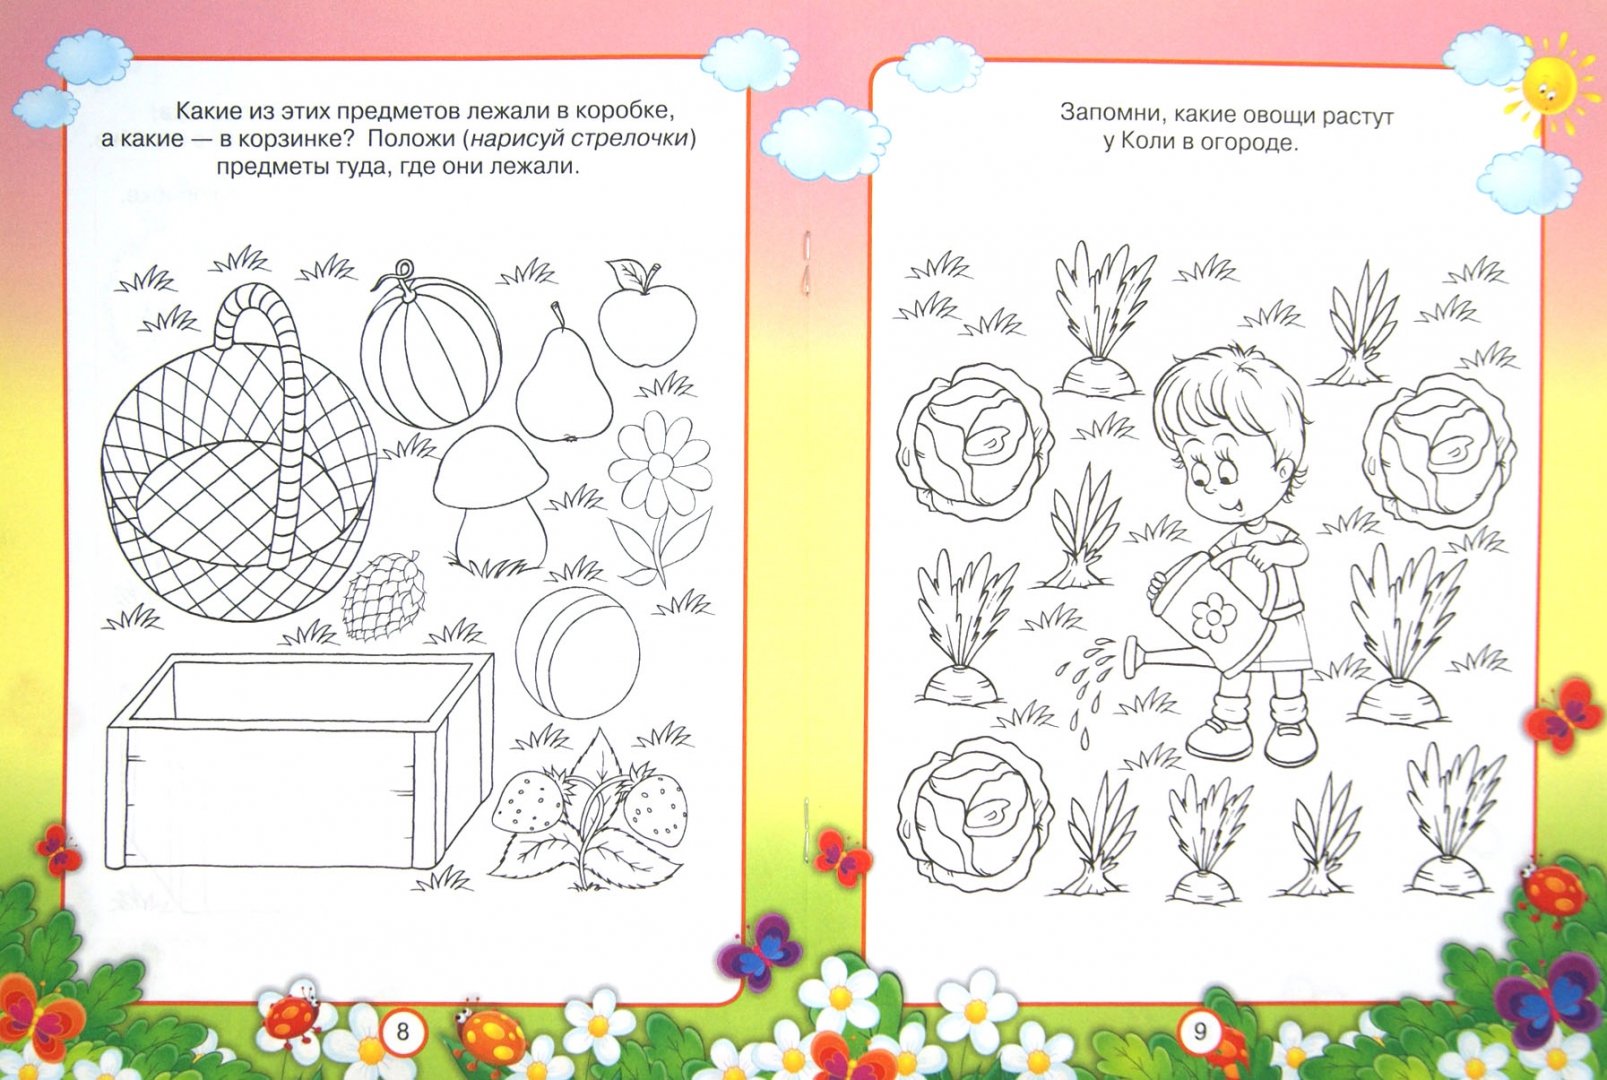 Иллюстрация 1 из 8 для Развиваем память. Для детей 3-4 лет - Гаврина, Топоркова, Щербинина, Кутявина | Лабиринт - книги. Источник: Лабиринт